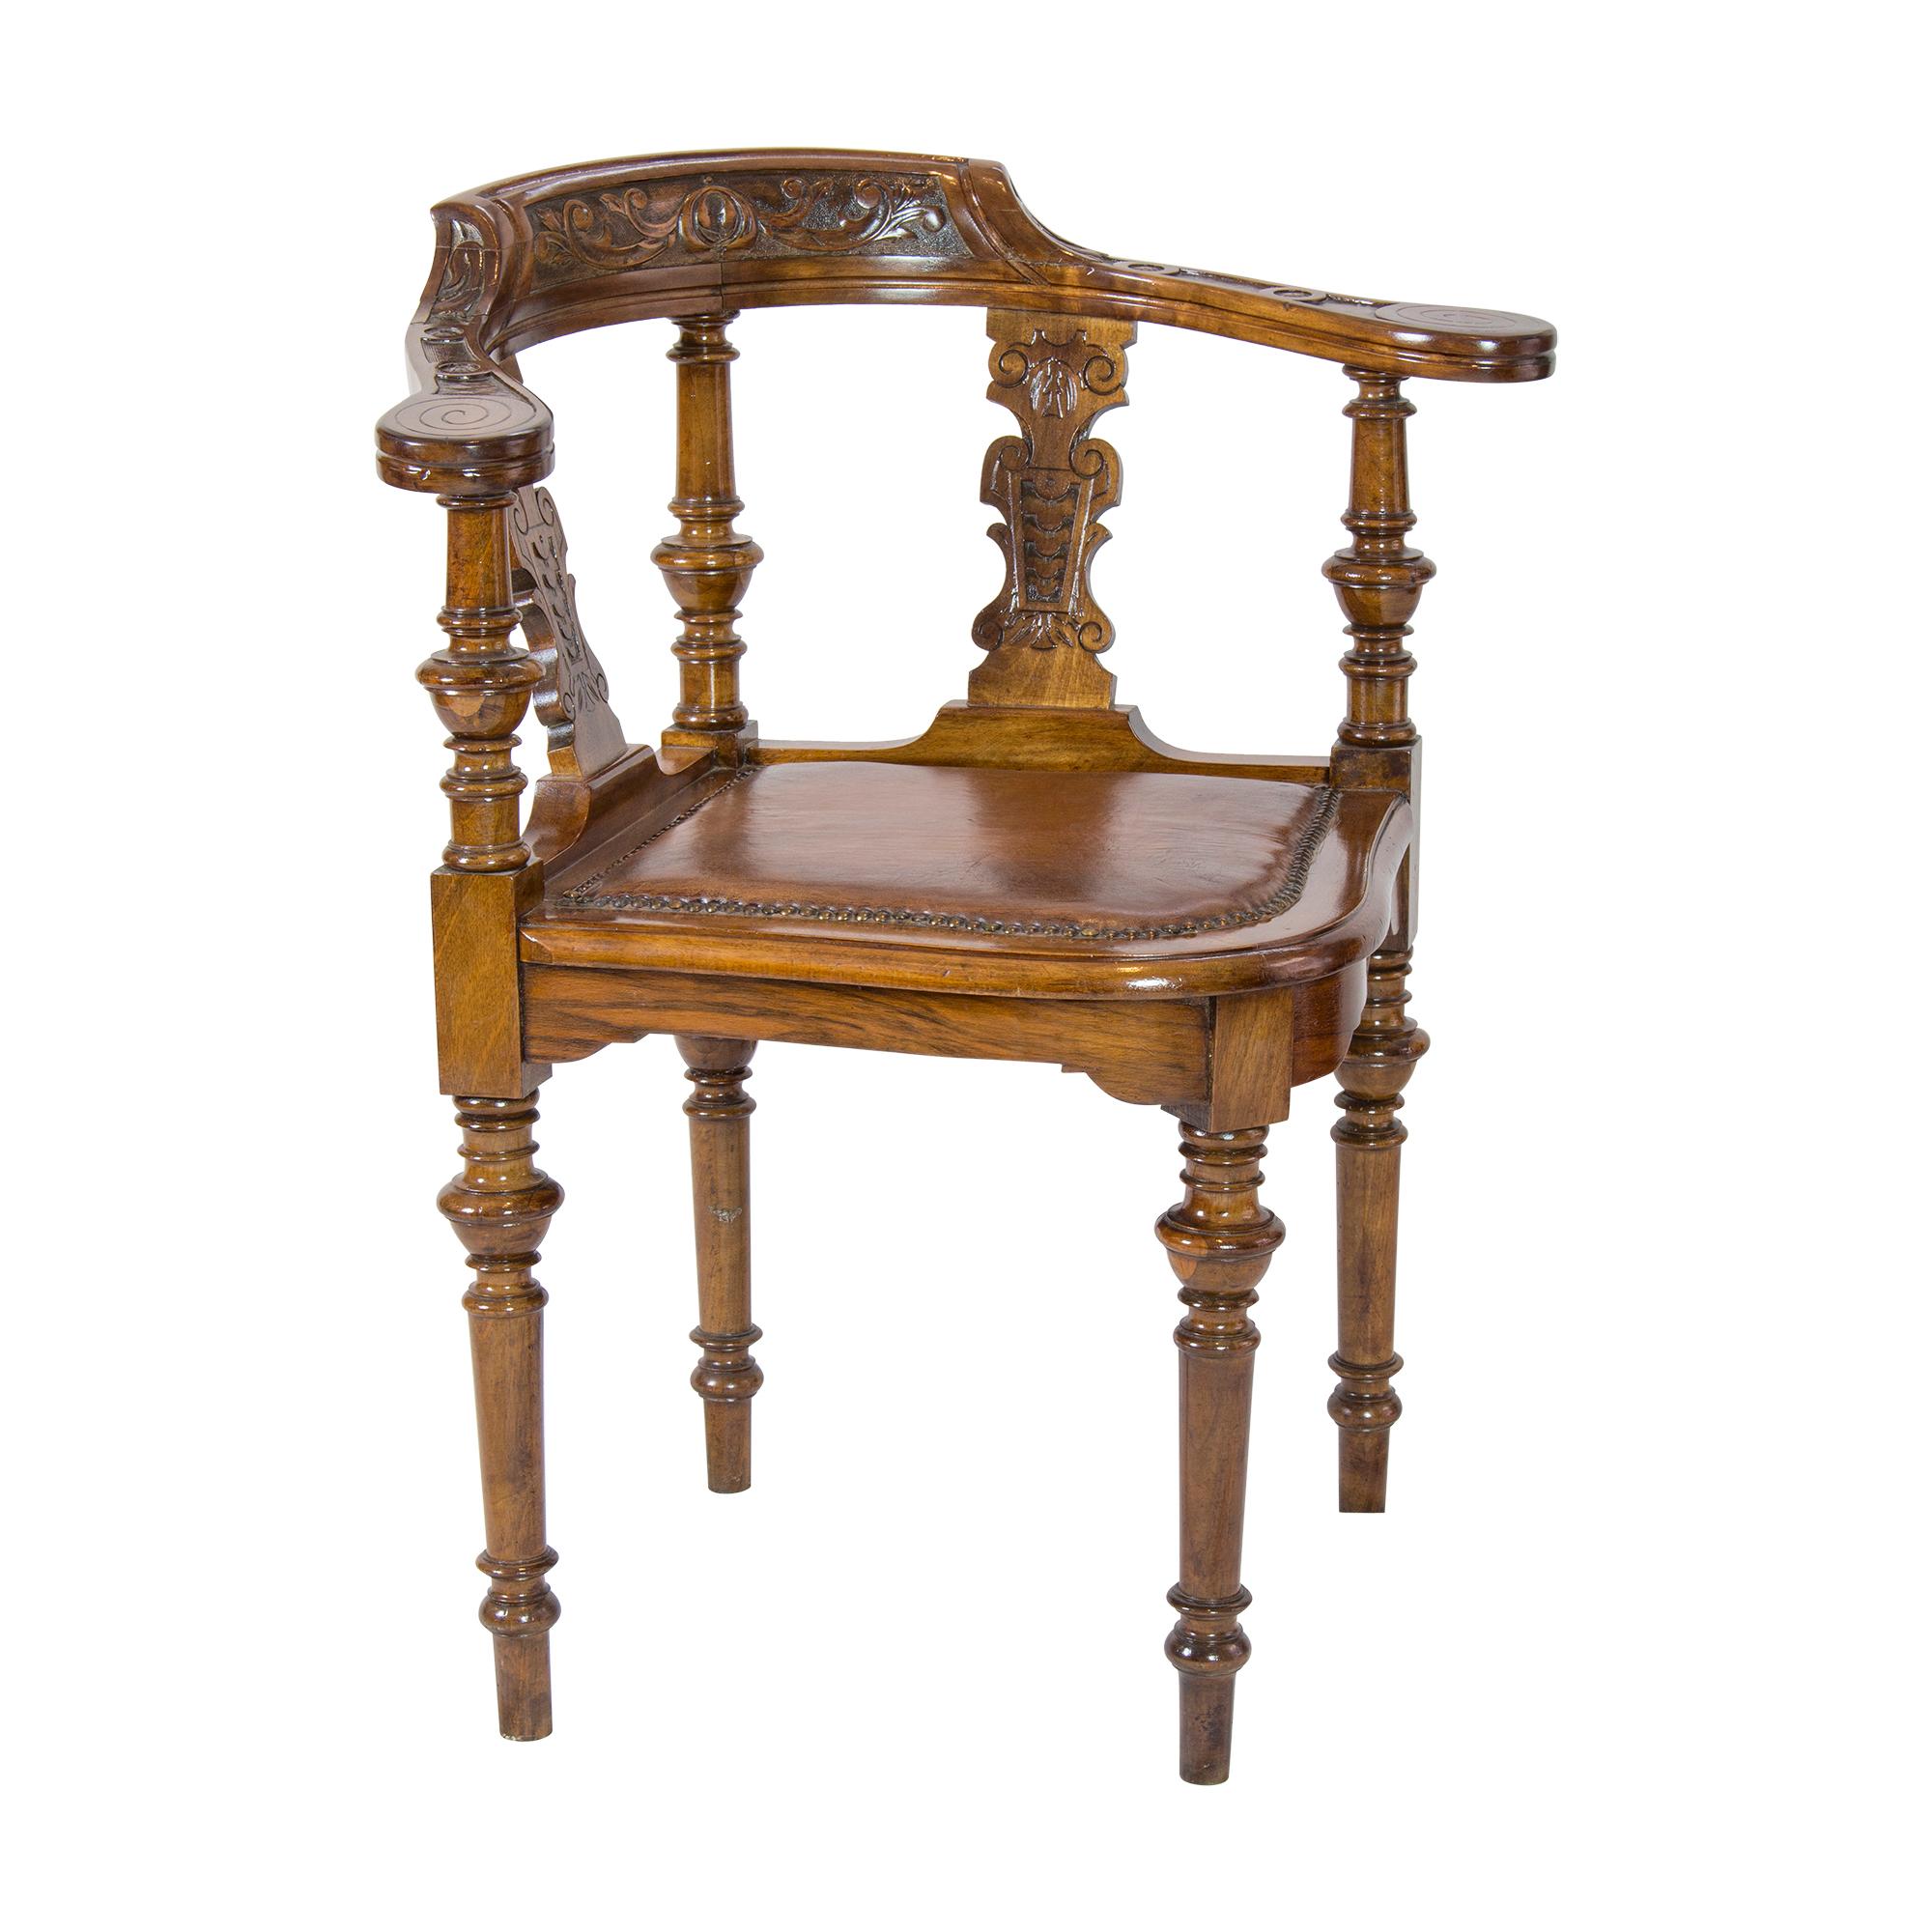 Très belle chaise d'angle rare sur laquelle on peut s'asseoir confortablement. Cette chaise d'angle date d'environ 1870 en Allemagne, de la période wilhelminienne. La chaise a été fabriquée en noyer massif. Le siège a été nouvellement recouvert de